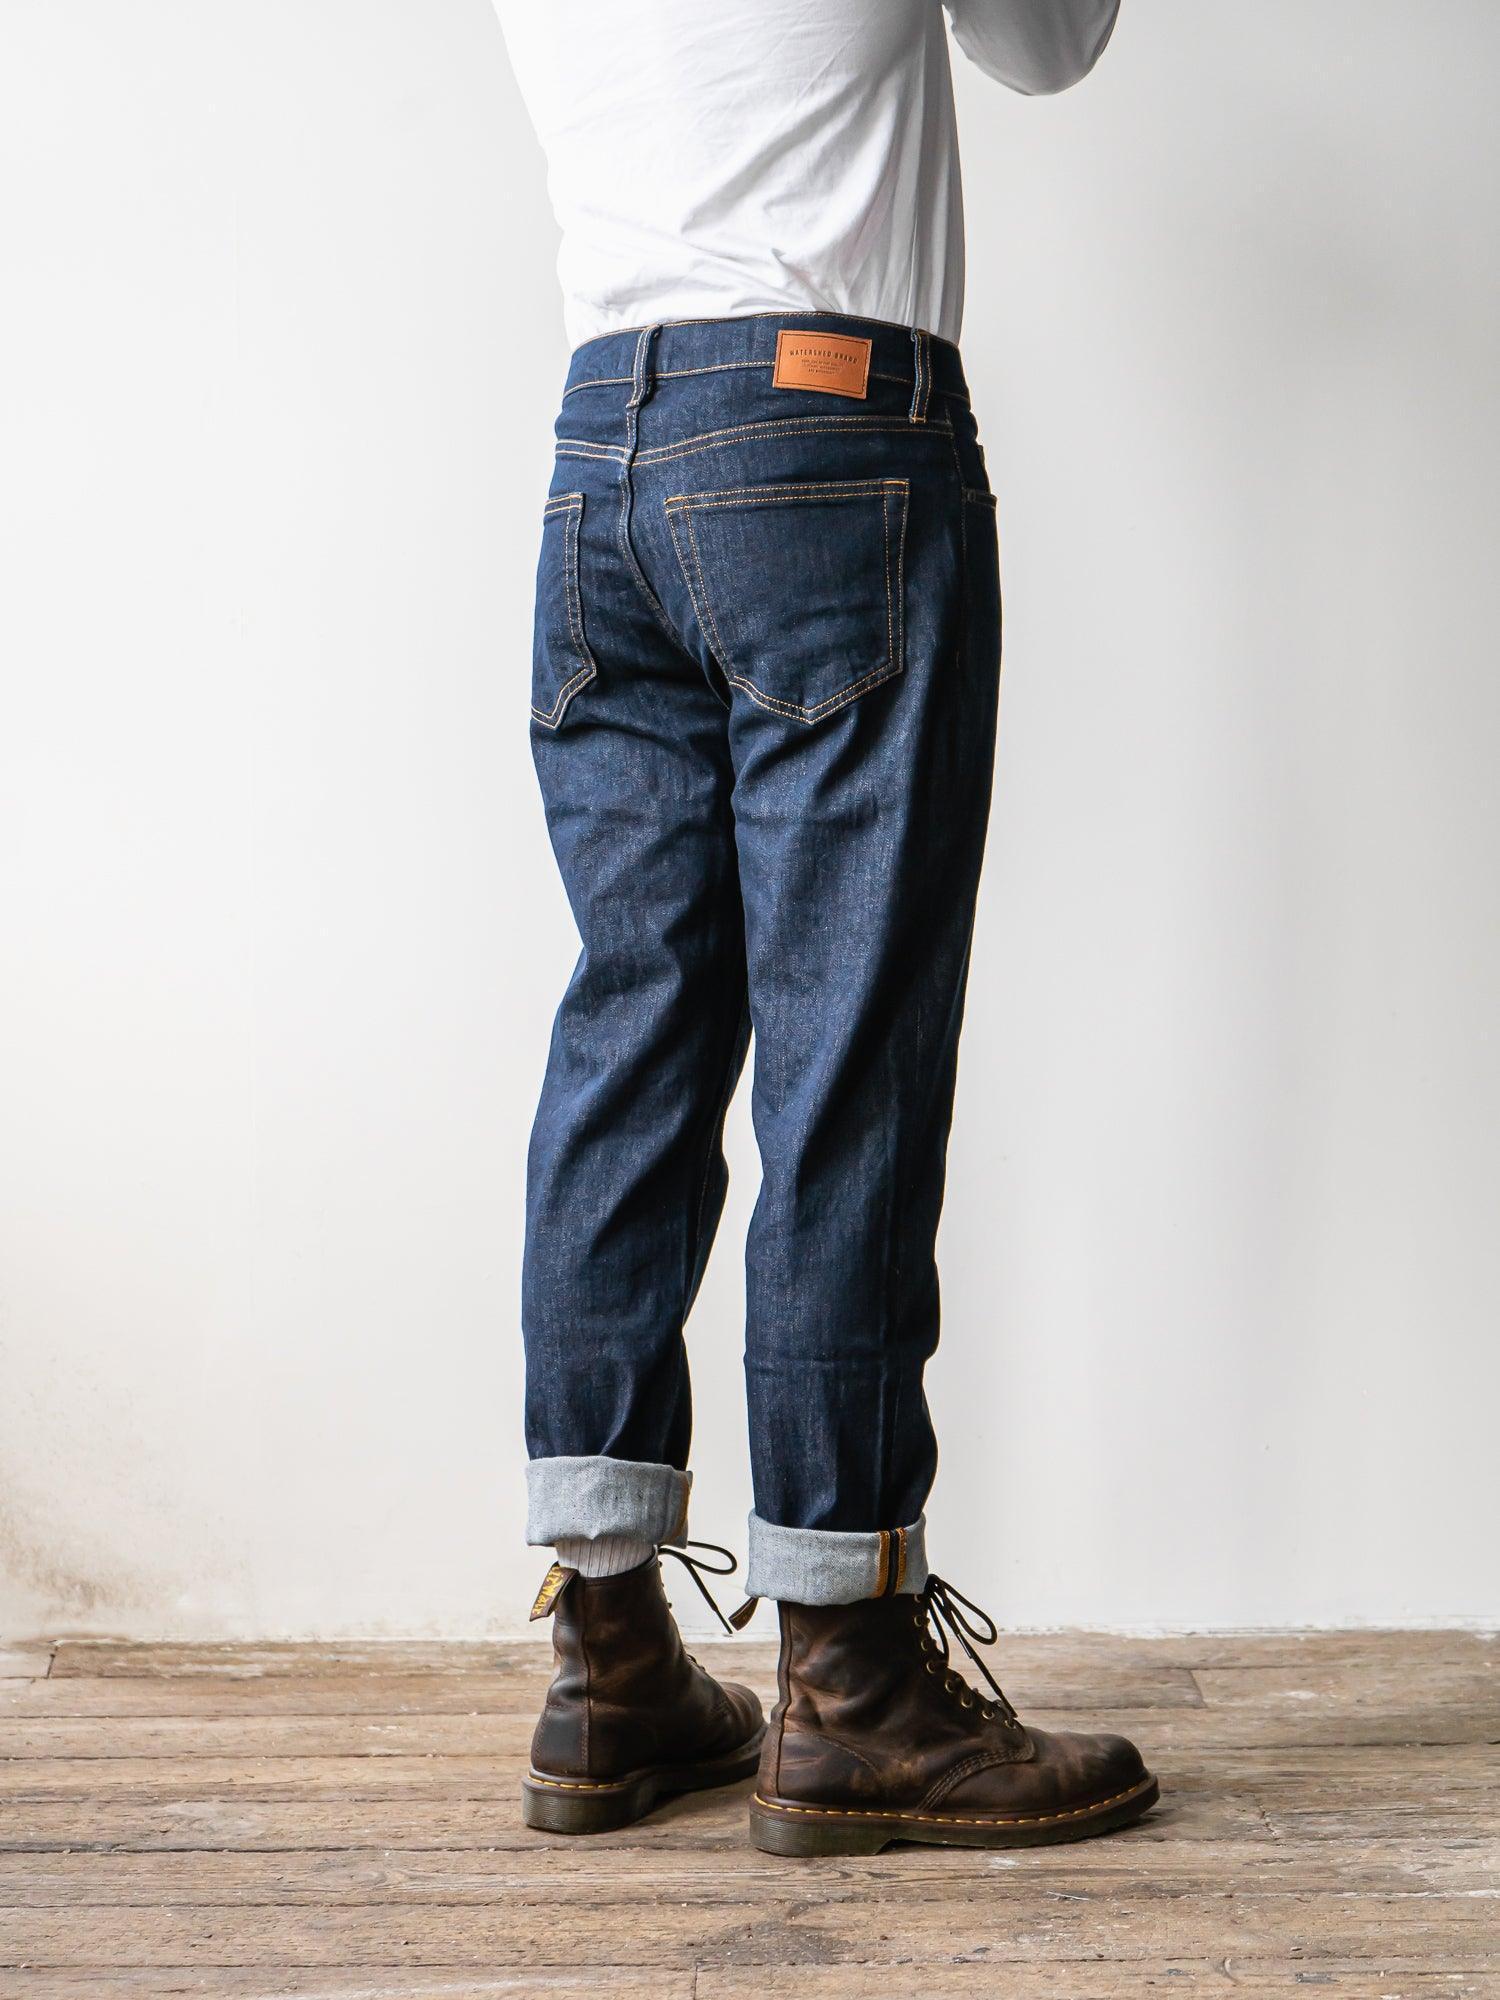 WS-1 Union Denim Jeans - Raw Indigo - Watershed Brand